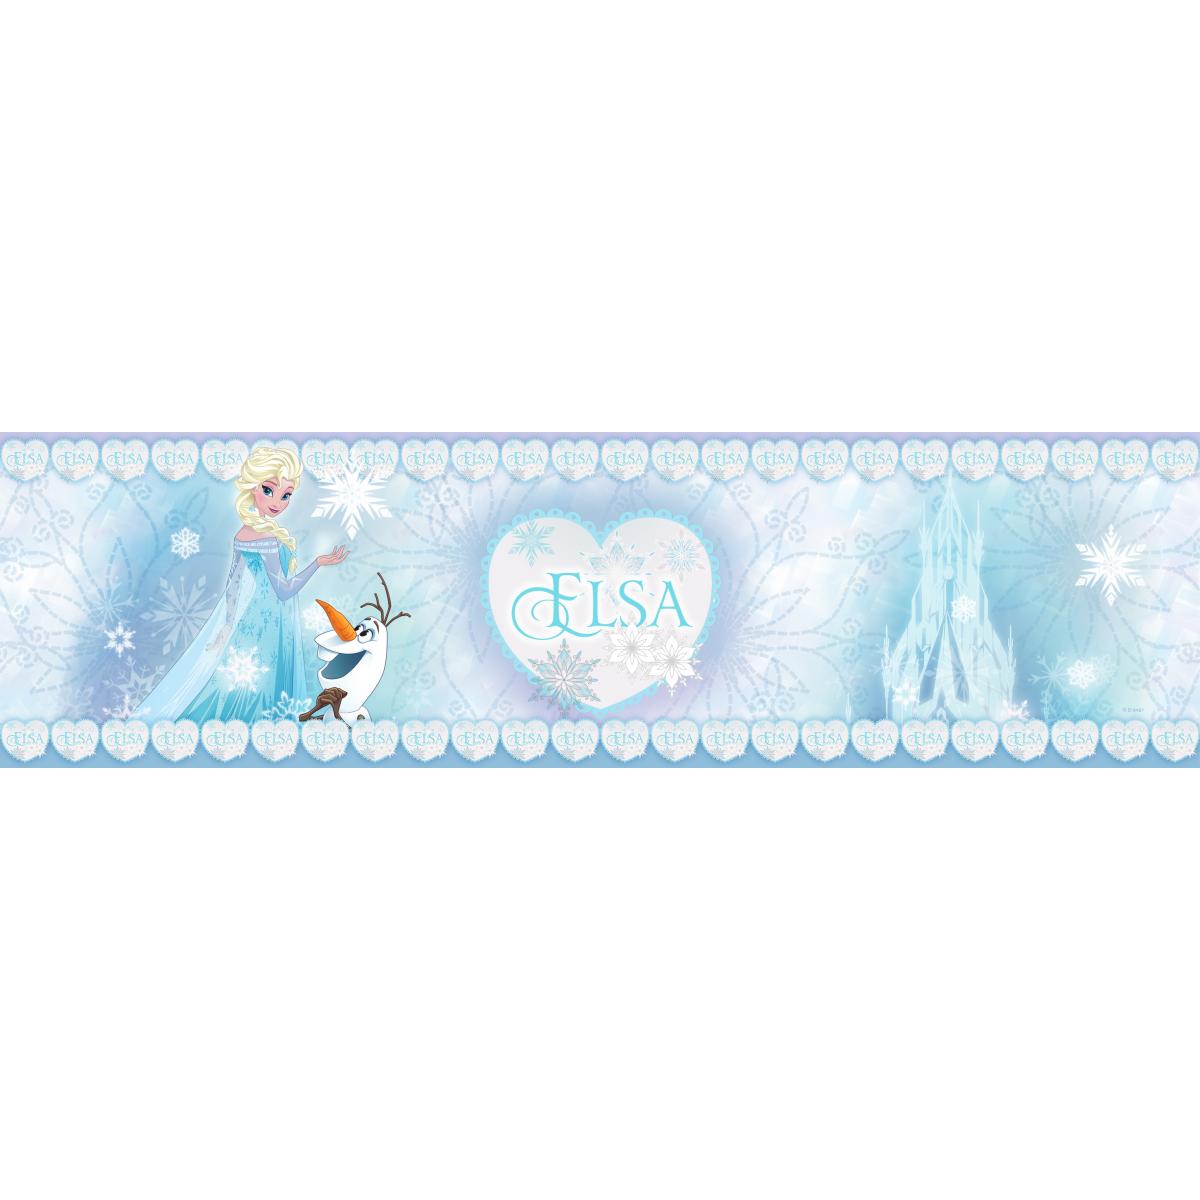 Décoration chambre enfant Disney Disney frise de papier peint adhésive La Reine des neiges Elsa bleu clair - 600016 - 14 x 500 cm